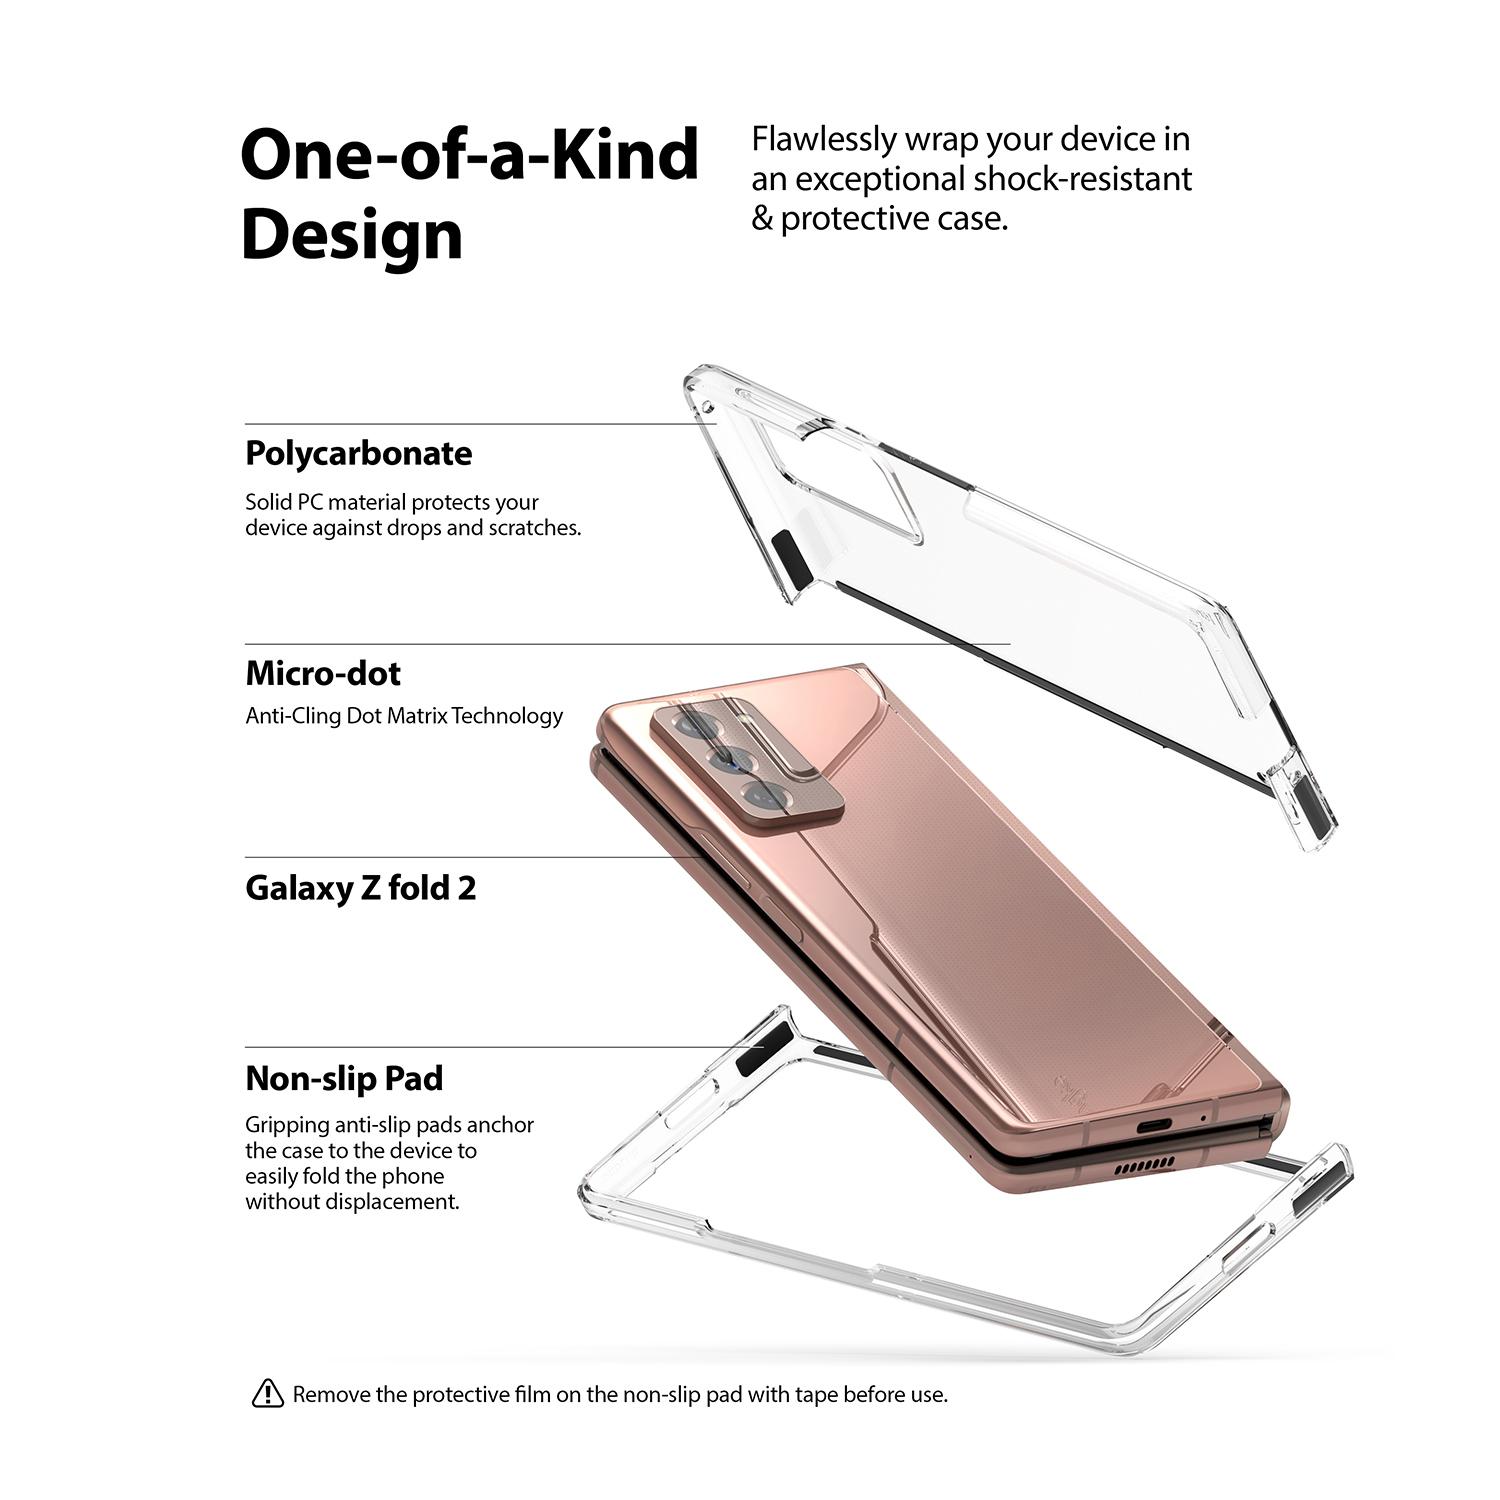 Samsung Galaxy Z Fold 2 Slim Case Clear